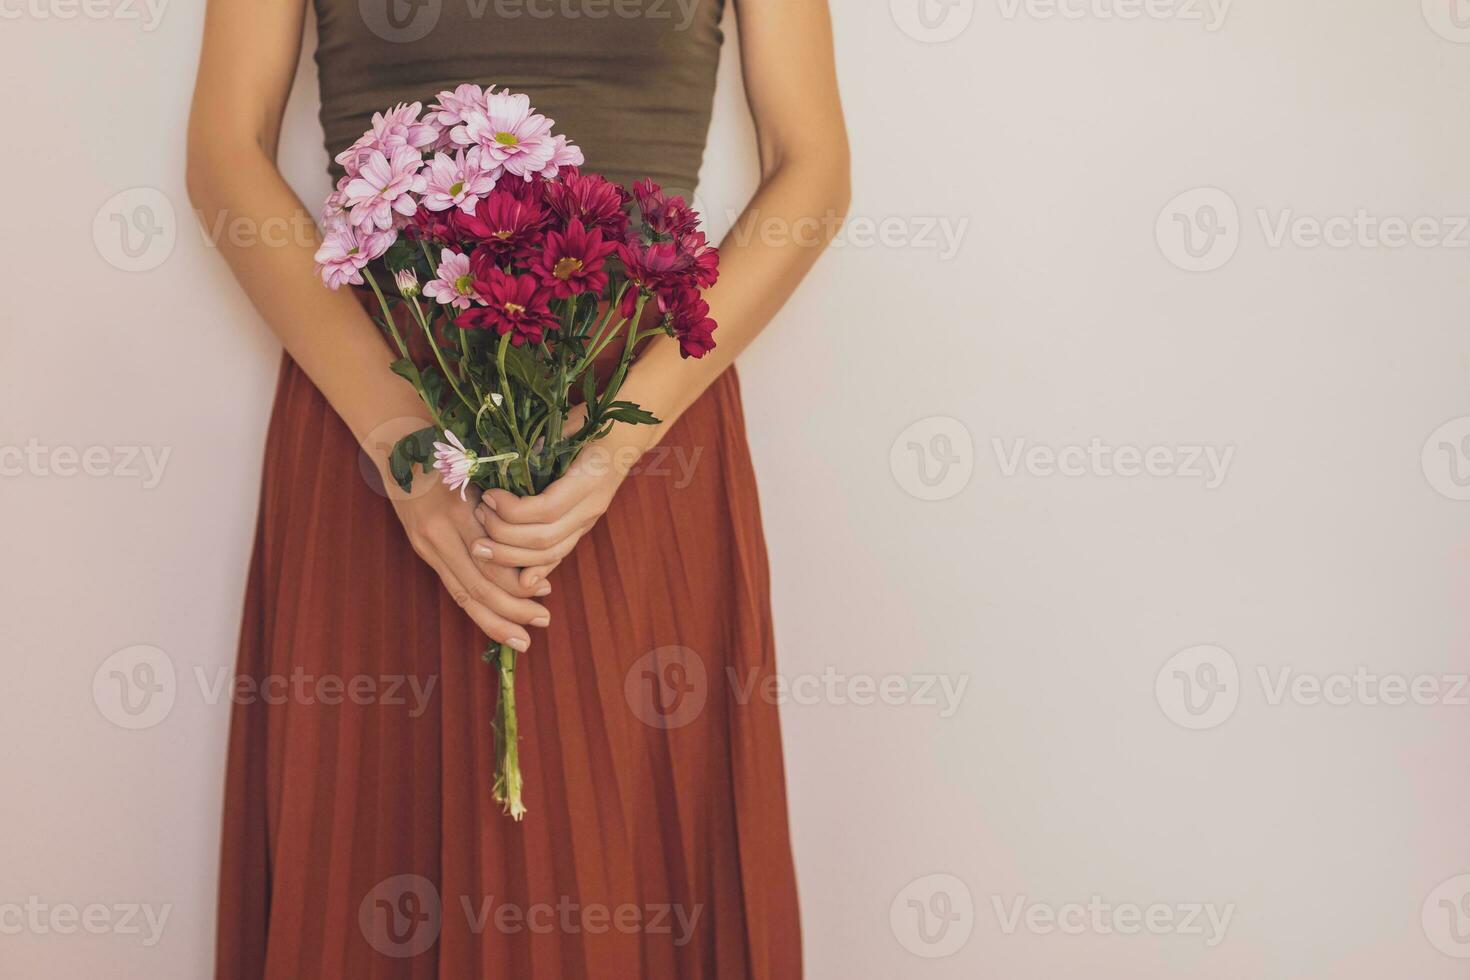 vrouw Holding mooi boeket van bloemen.focus Aan bloemen. foto